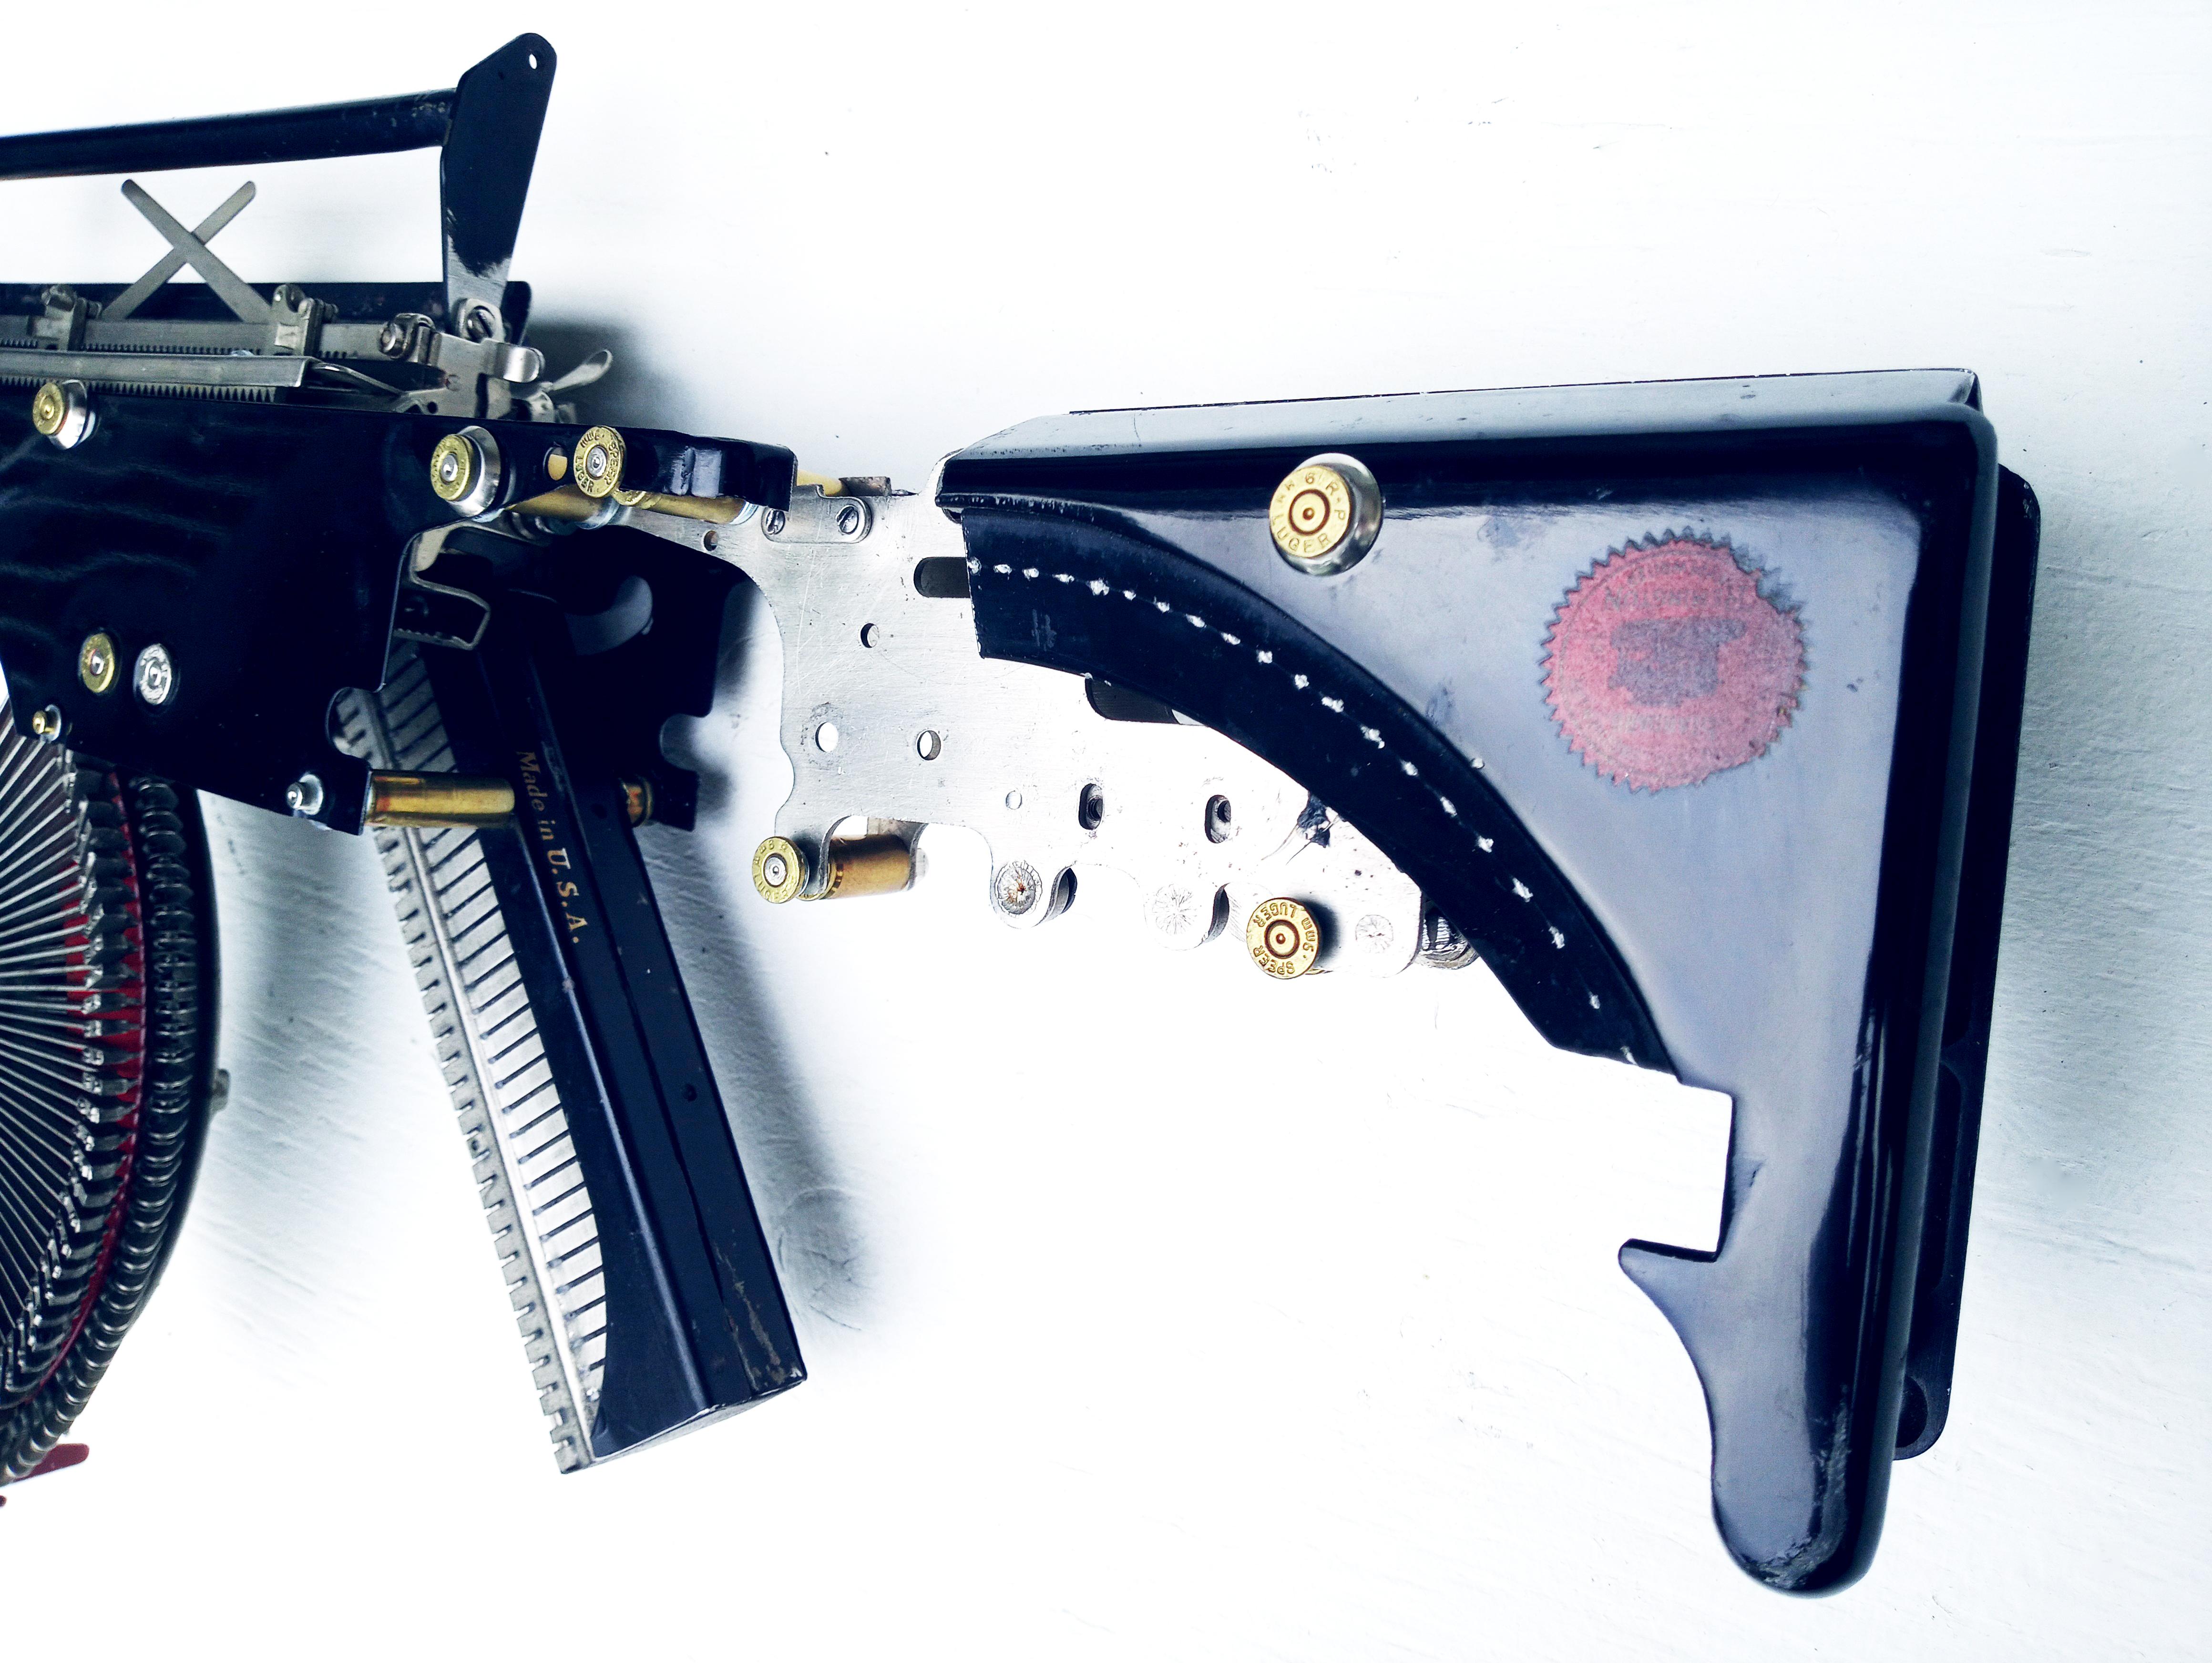 The Remington Trilogy- Vintage Typewriter Machine Gun series, set of 3 Sculpture 2